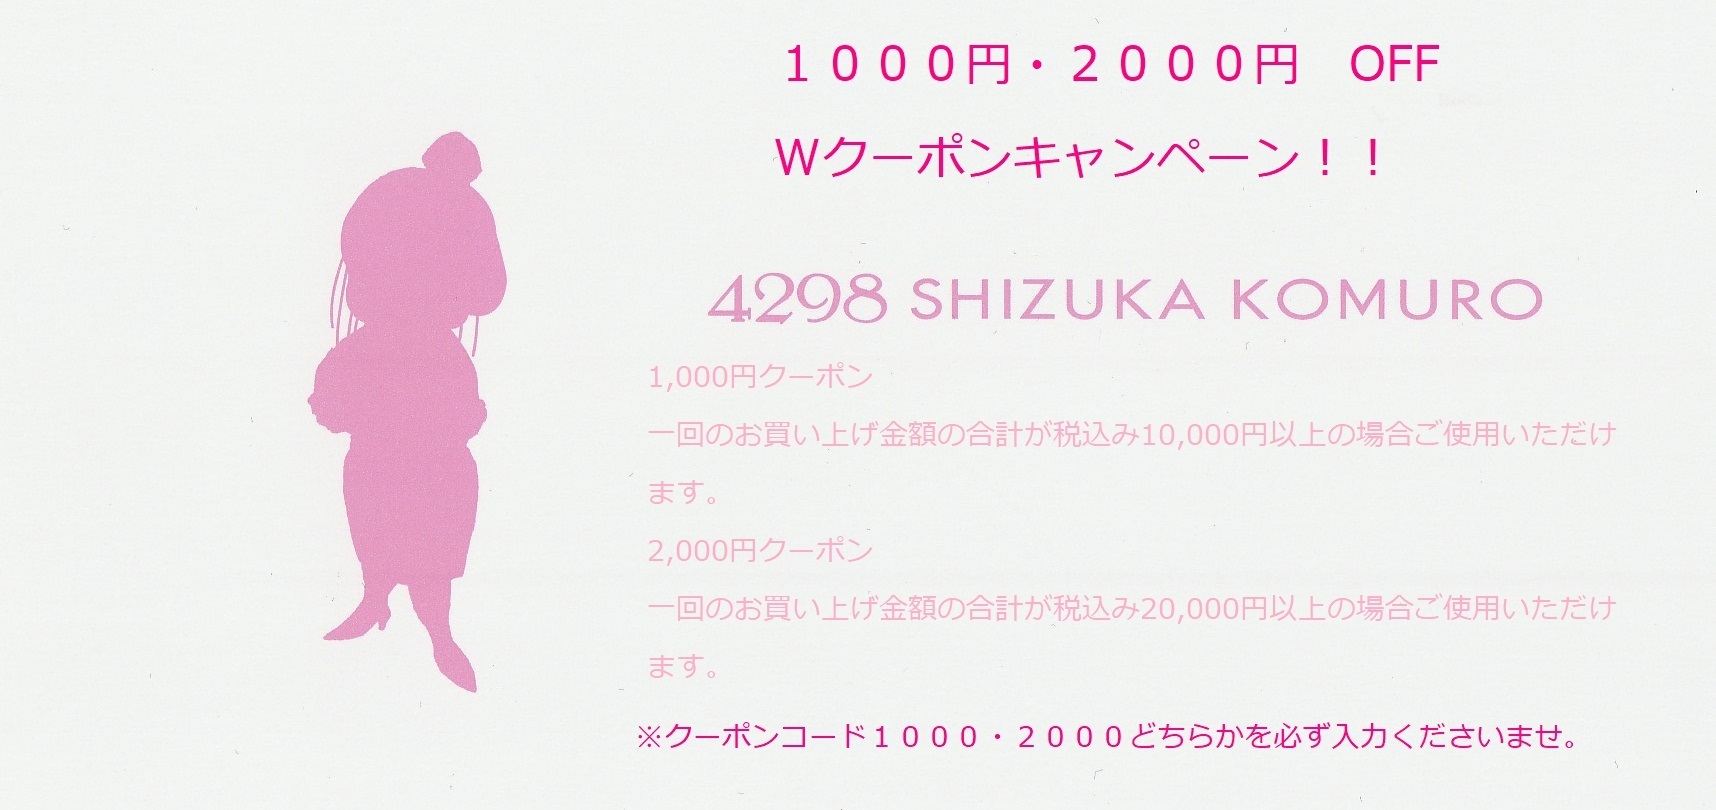 ファッション通販の4298 SHIZUKA KOMURO │ 4298シヅカコムロ